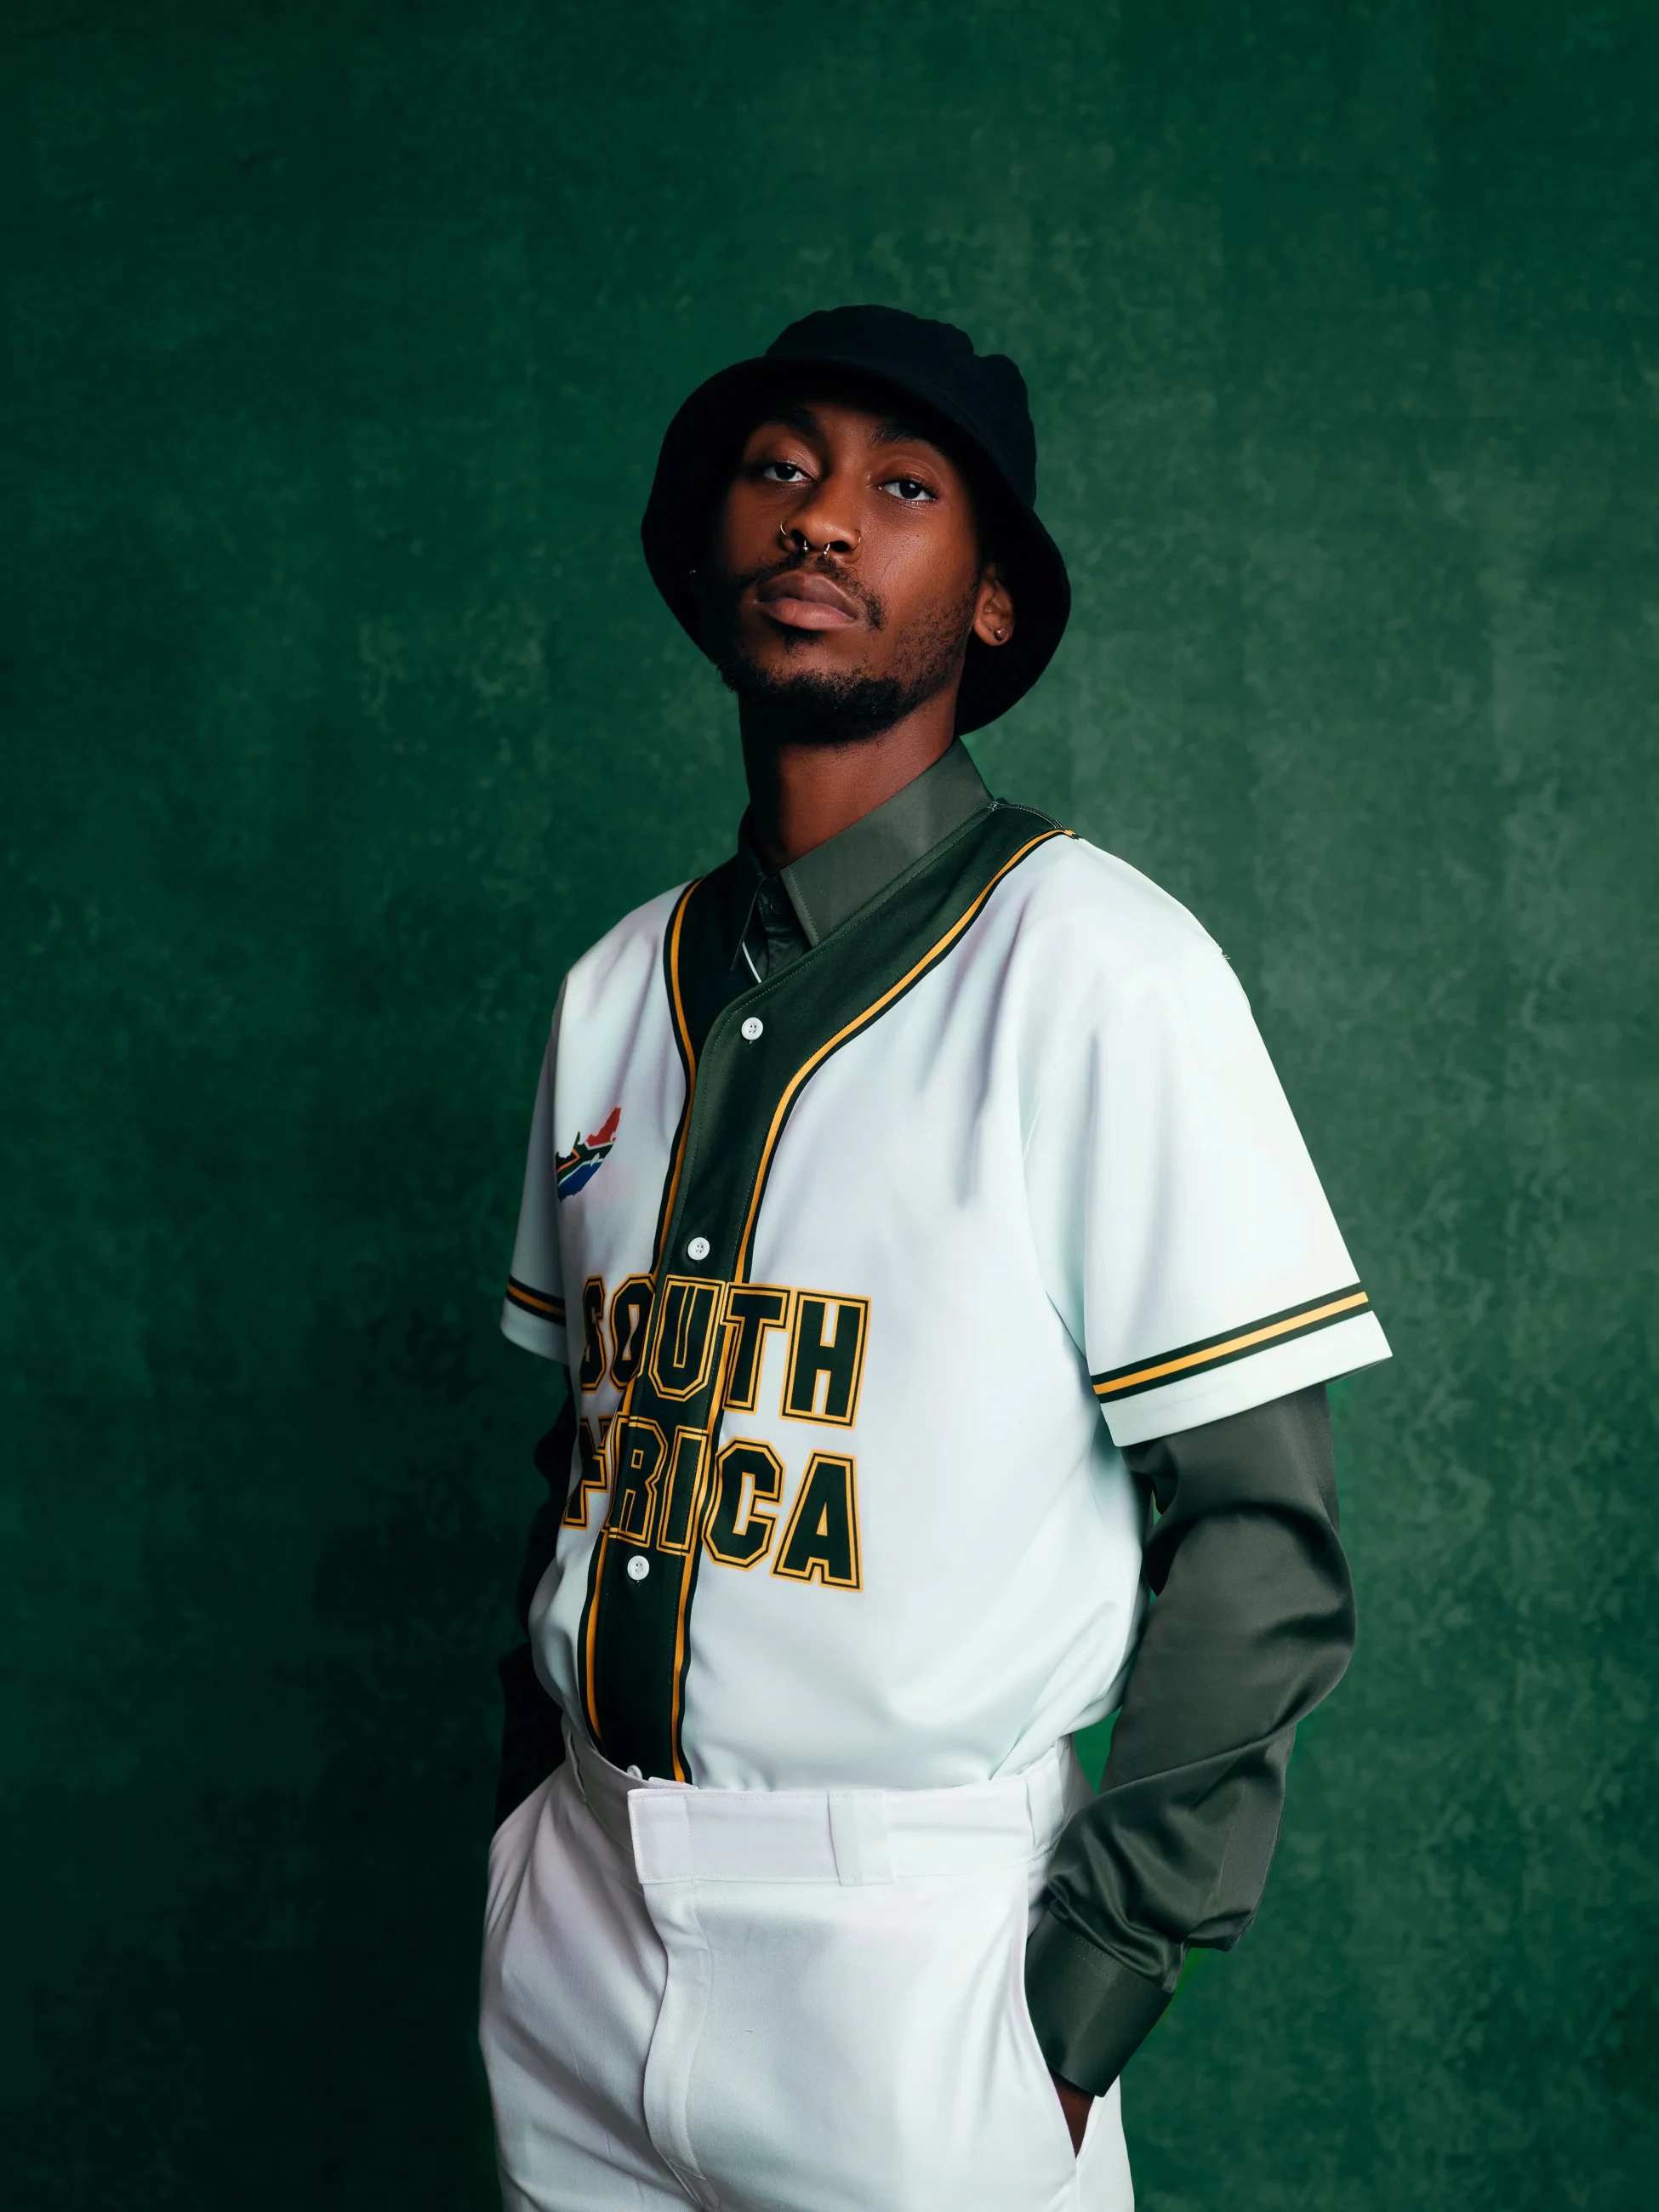 

Футболка мужская бейсбольная с 3D принтом, рубашка с принтом флага страны любви Южной Африки, топ в стиле оверсайз, уличная одежда в стиле хип-хоп, на лето